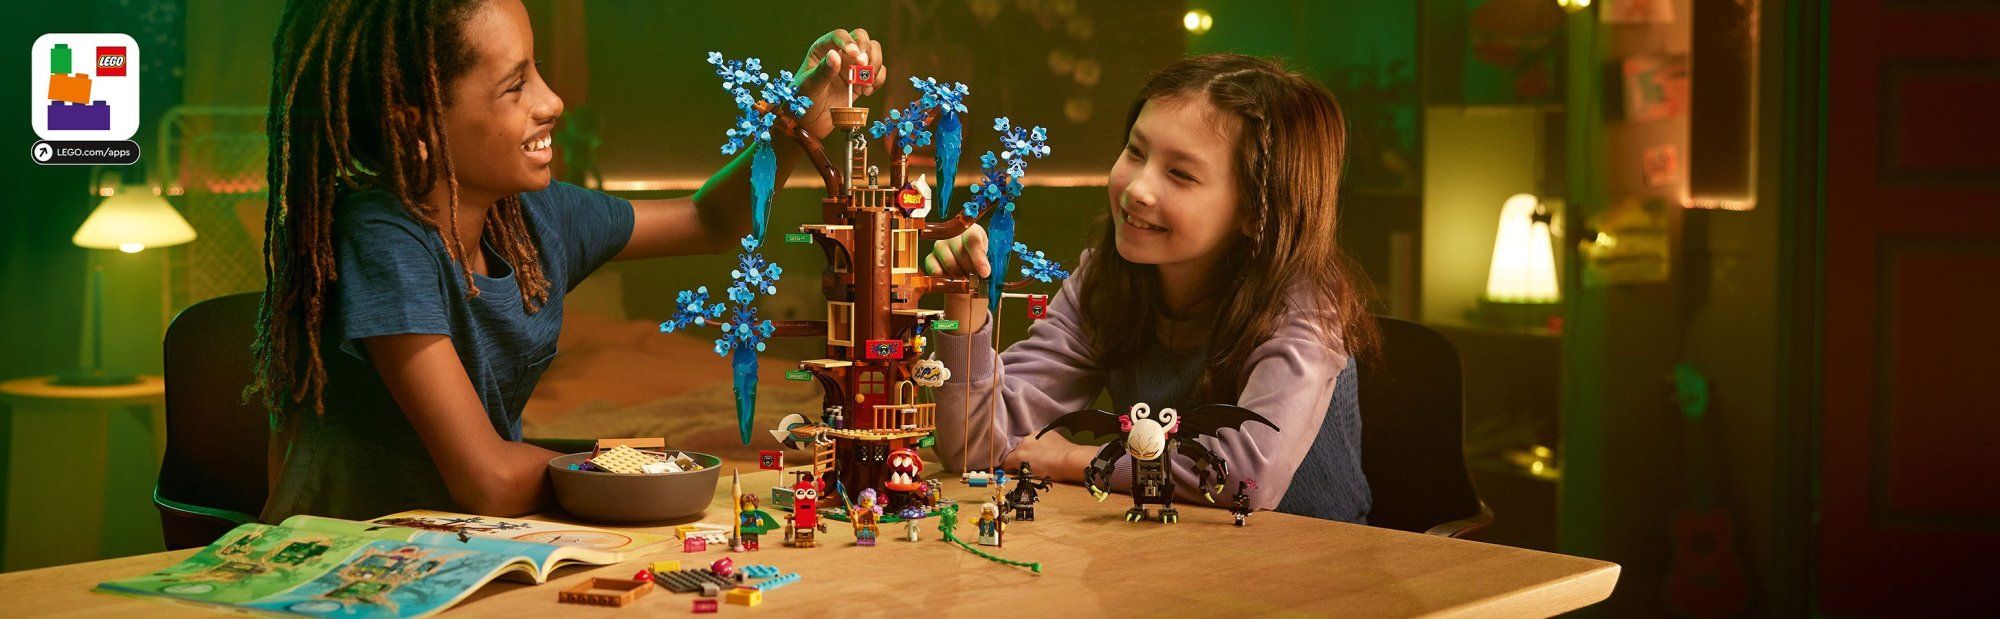 LEGO DREAMZzz 71461 Fantastický domček na strome